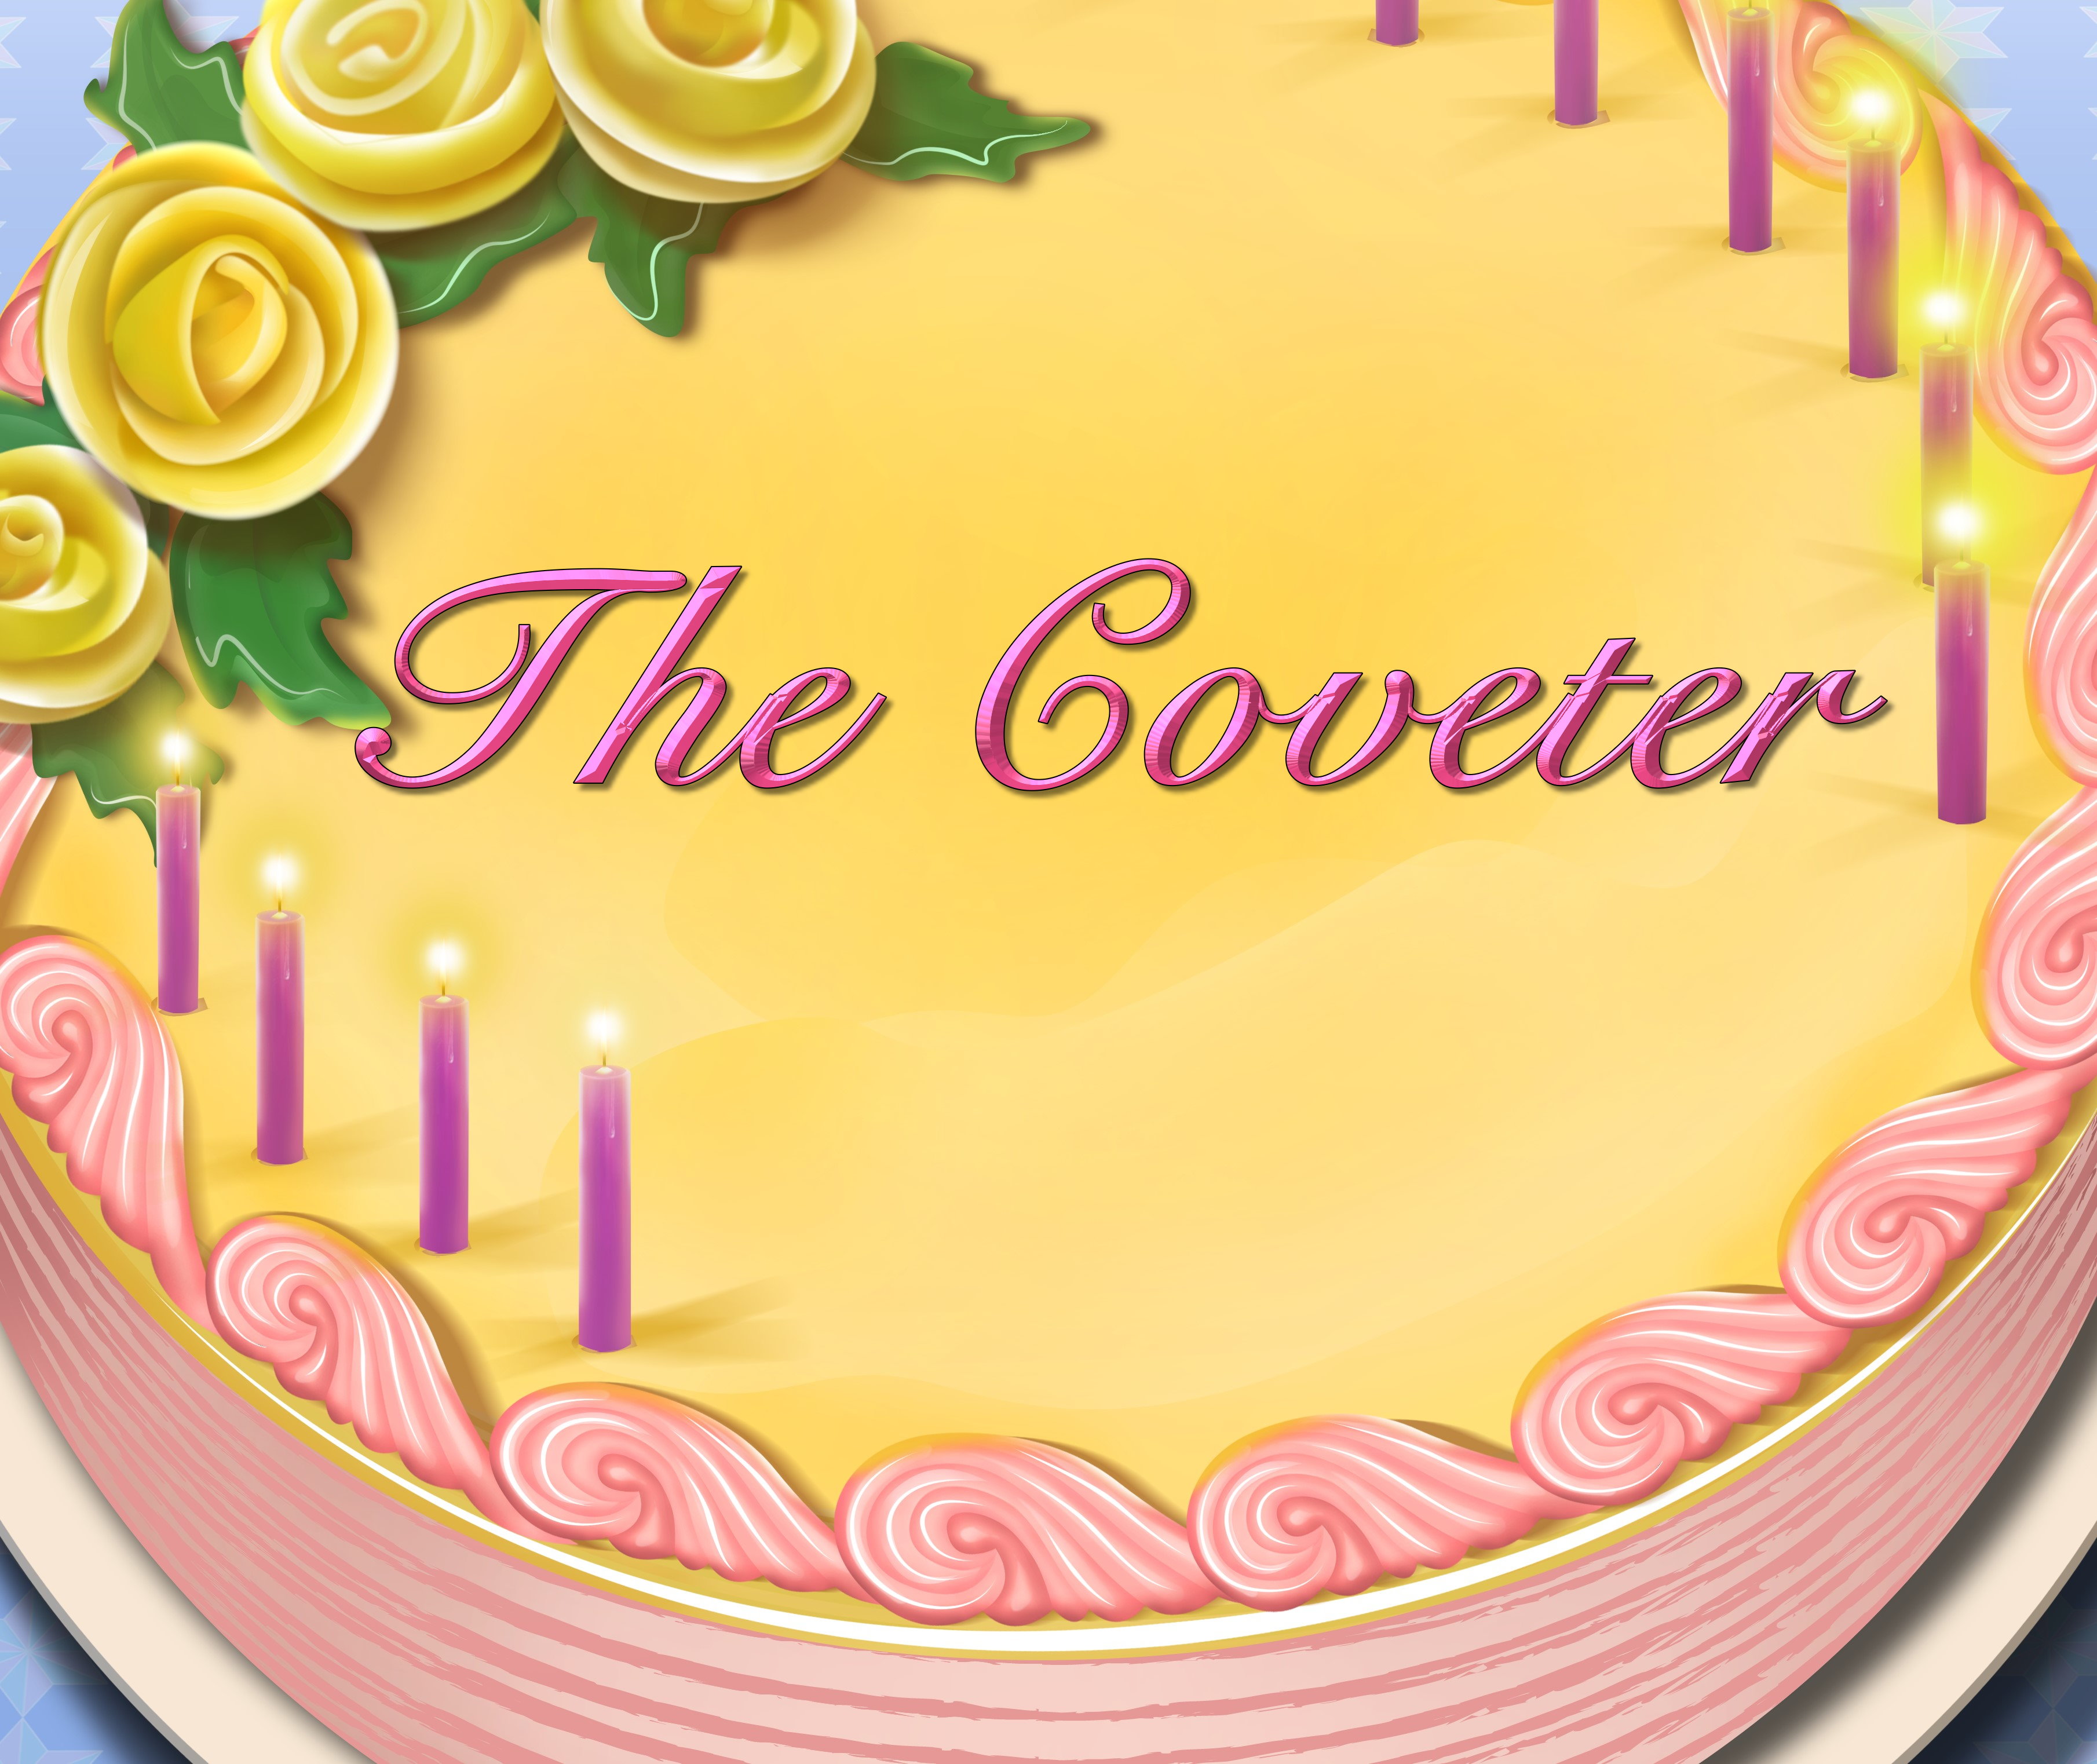 The Coverter Birthday Cake